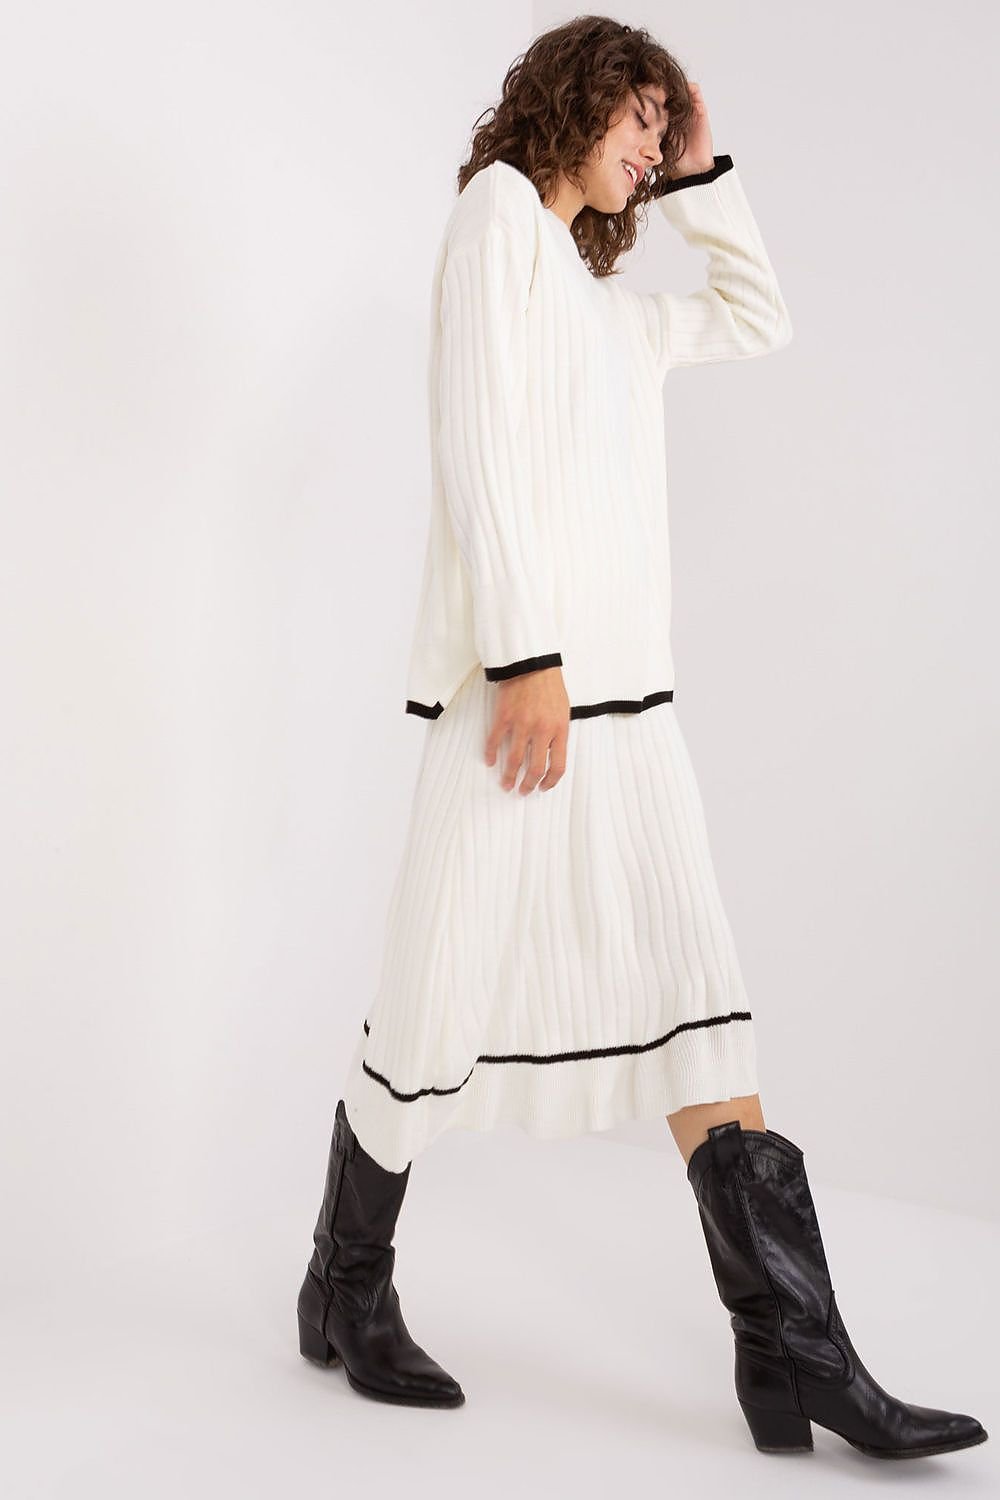 Jupe plissée blanche midi avec détails noirs, ensemble élégant pour un look tendance et chic - ensemble-blanc-jupe